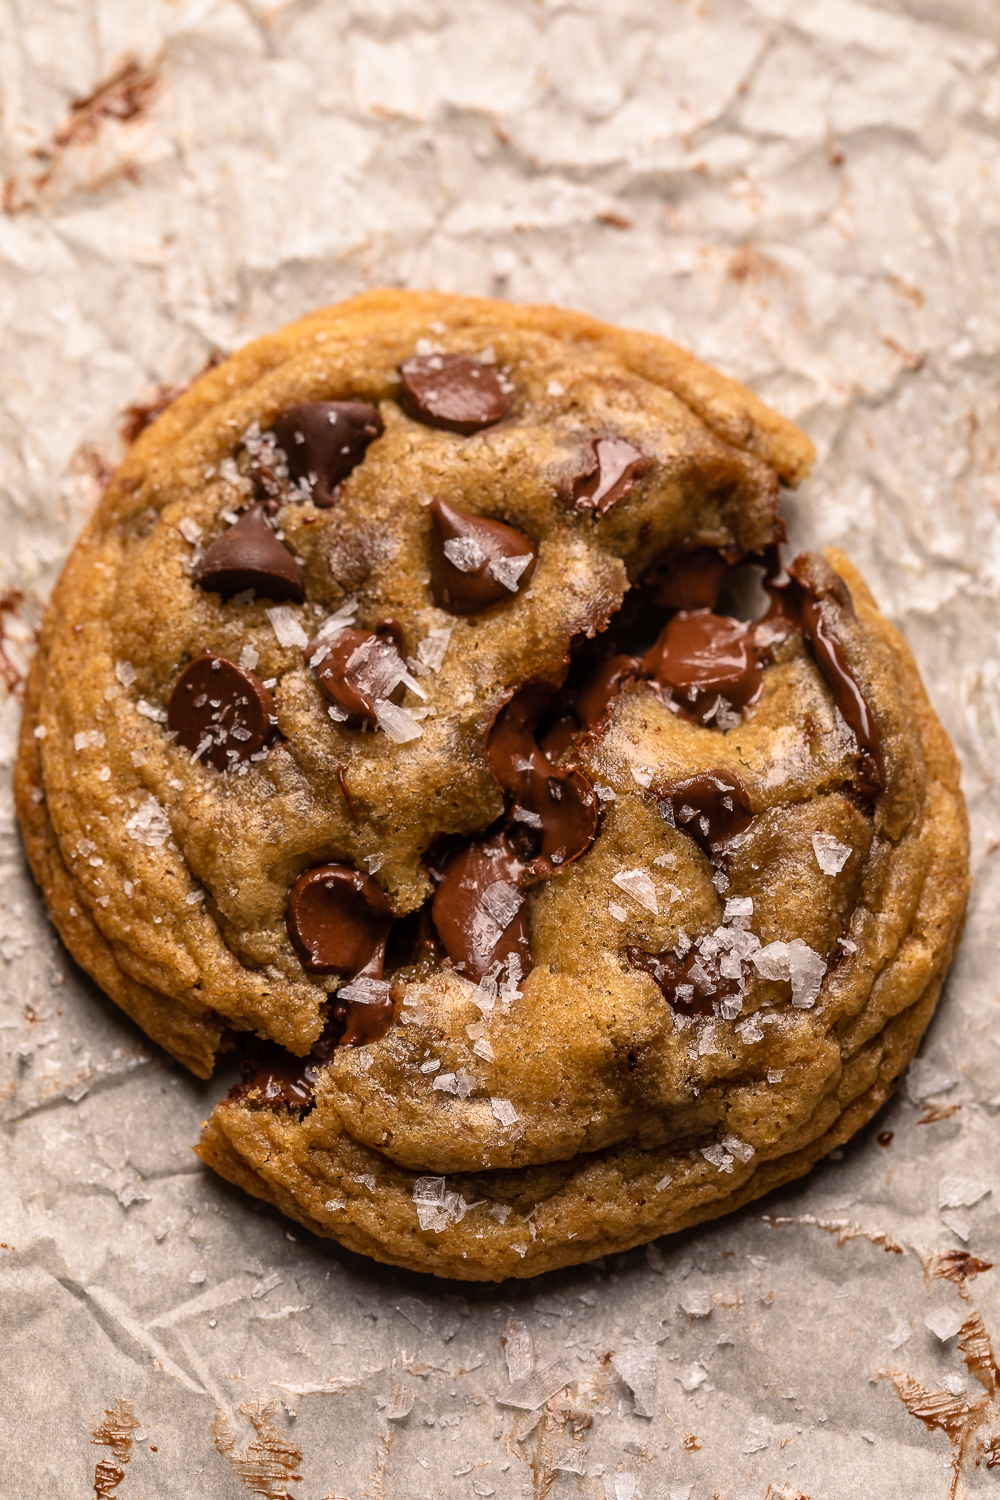 Soft Baked Cookies N' Creme Cookie